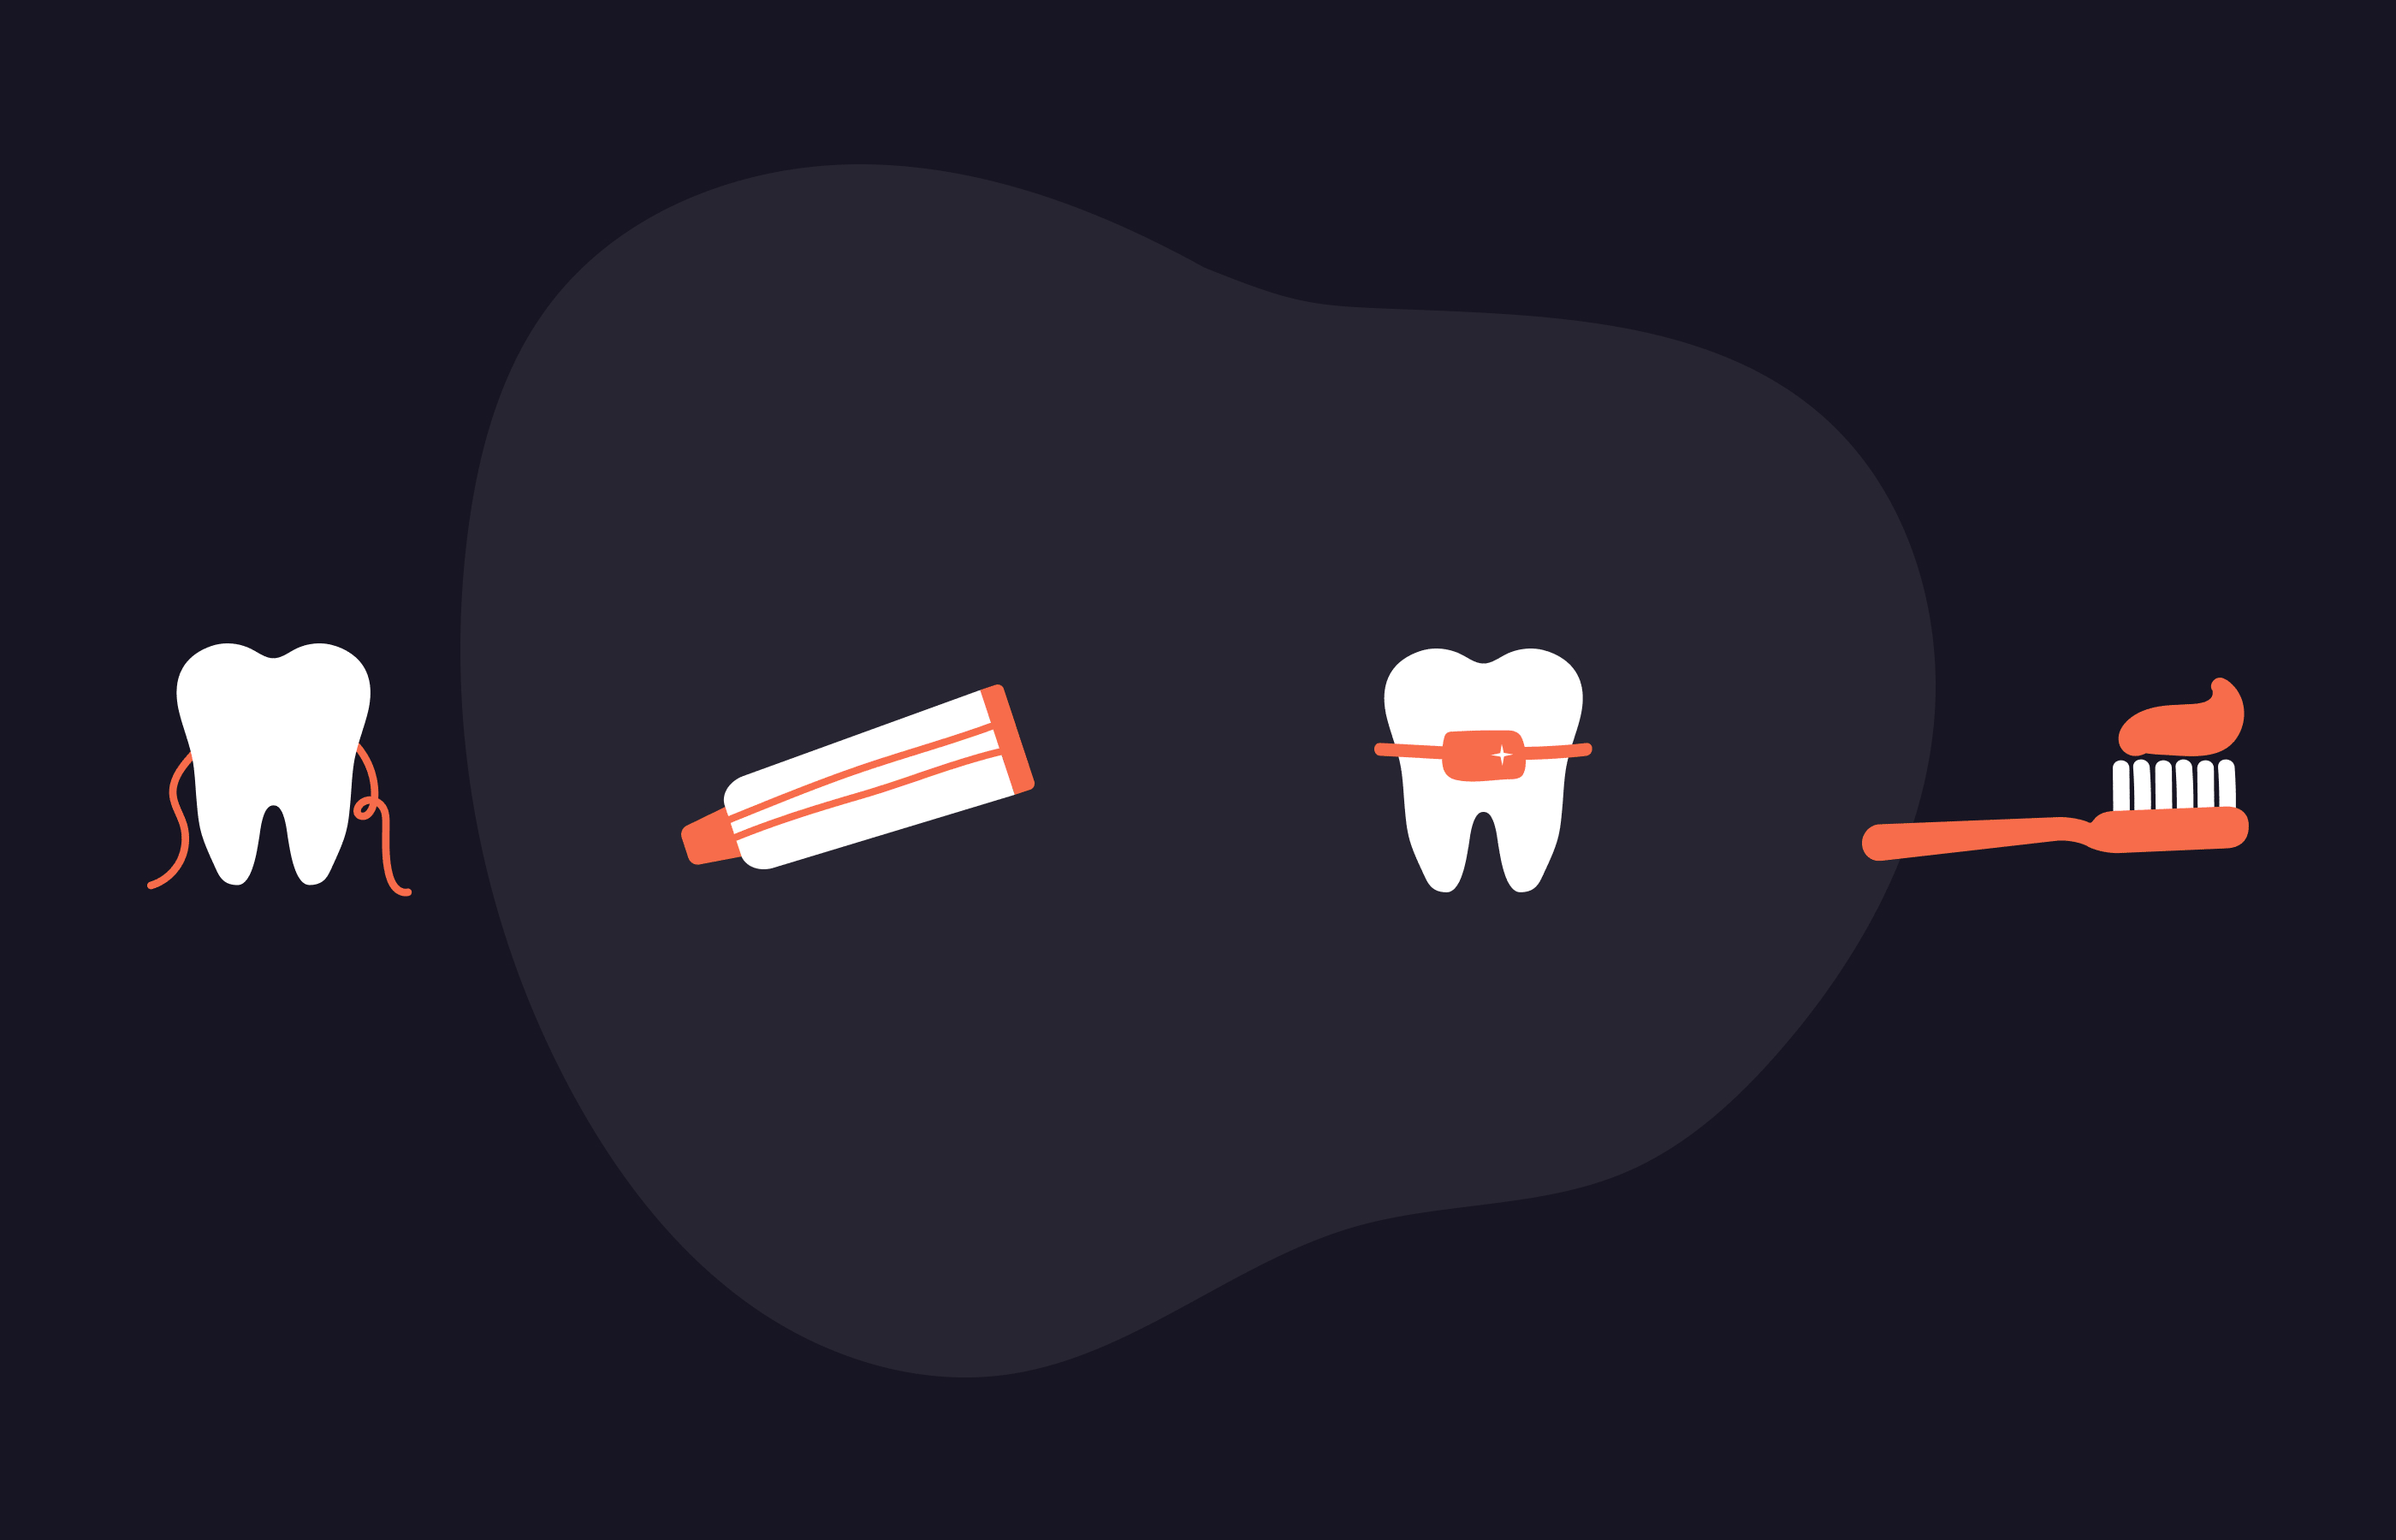 Une illustration représentant quatre éléments d'hygiène bucco-dentaire : une dent avec du fil dentaire, un tube de dentifrice, une dent avec un appareil orthodontique et une brosse à dents avec du dentifrice.